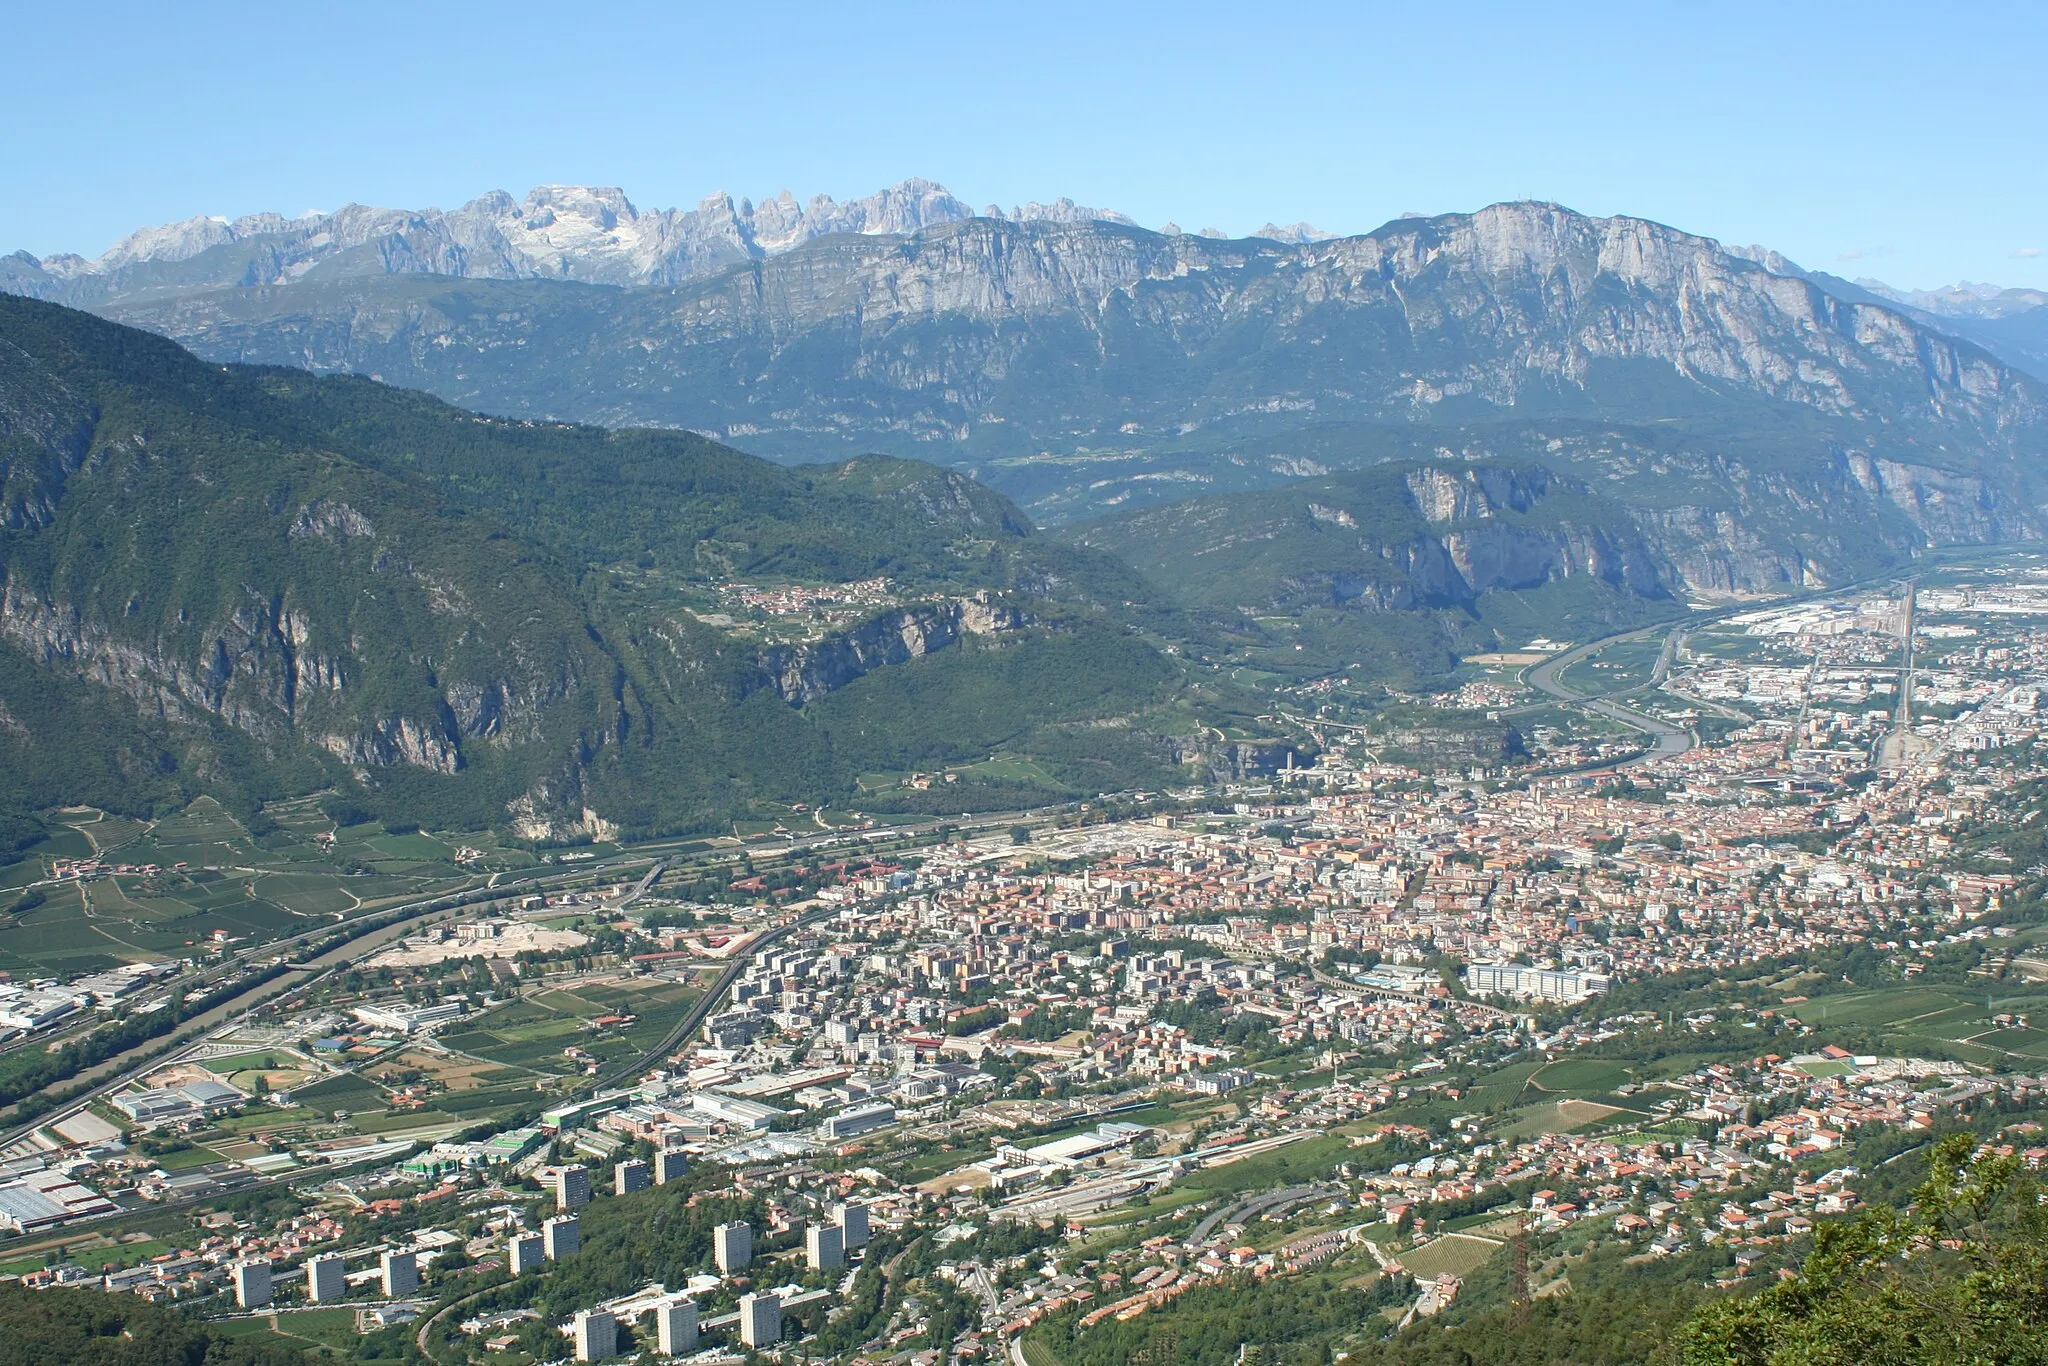 Image of Trento